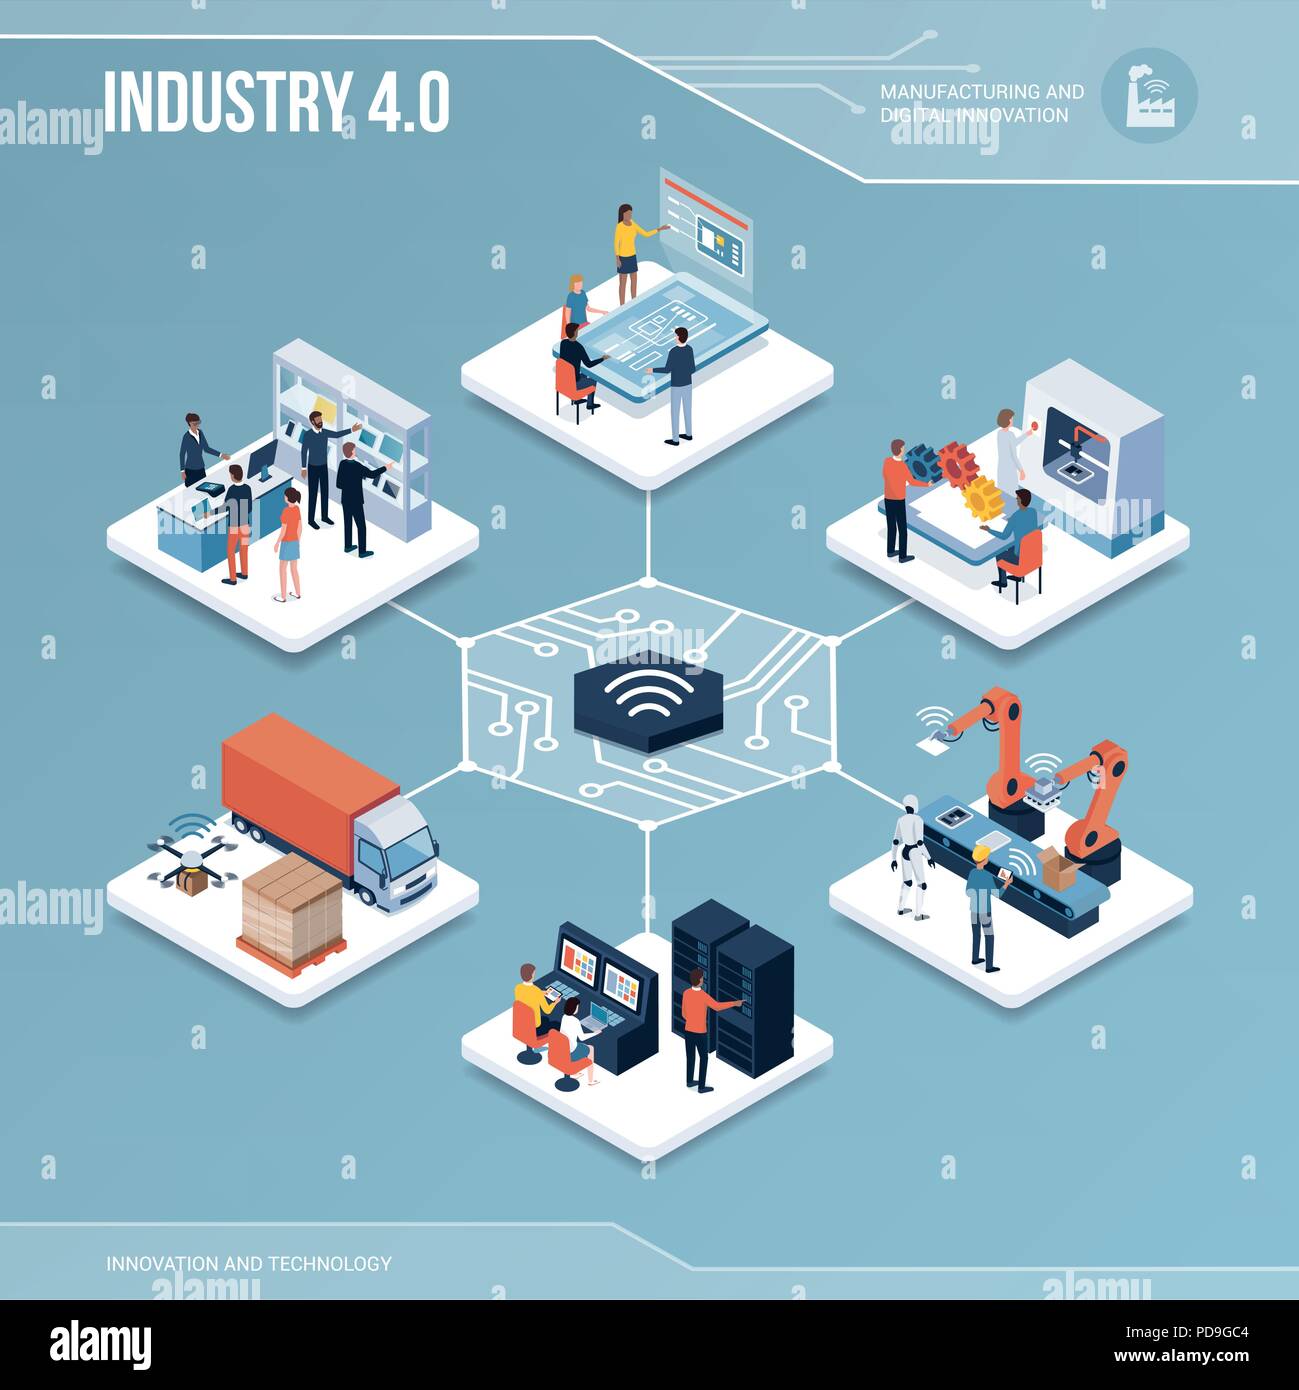 Digitaler Kern: Industrie 4.0, Produktion und Automatisierung isometrische Infografik mit Menschen Stock Vektor